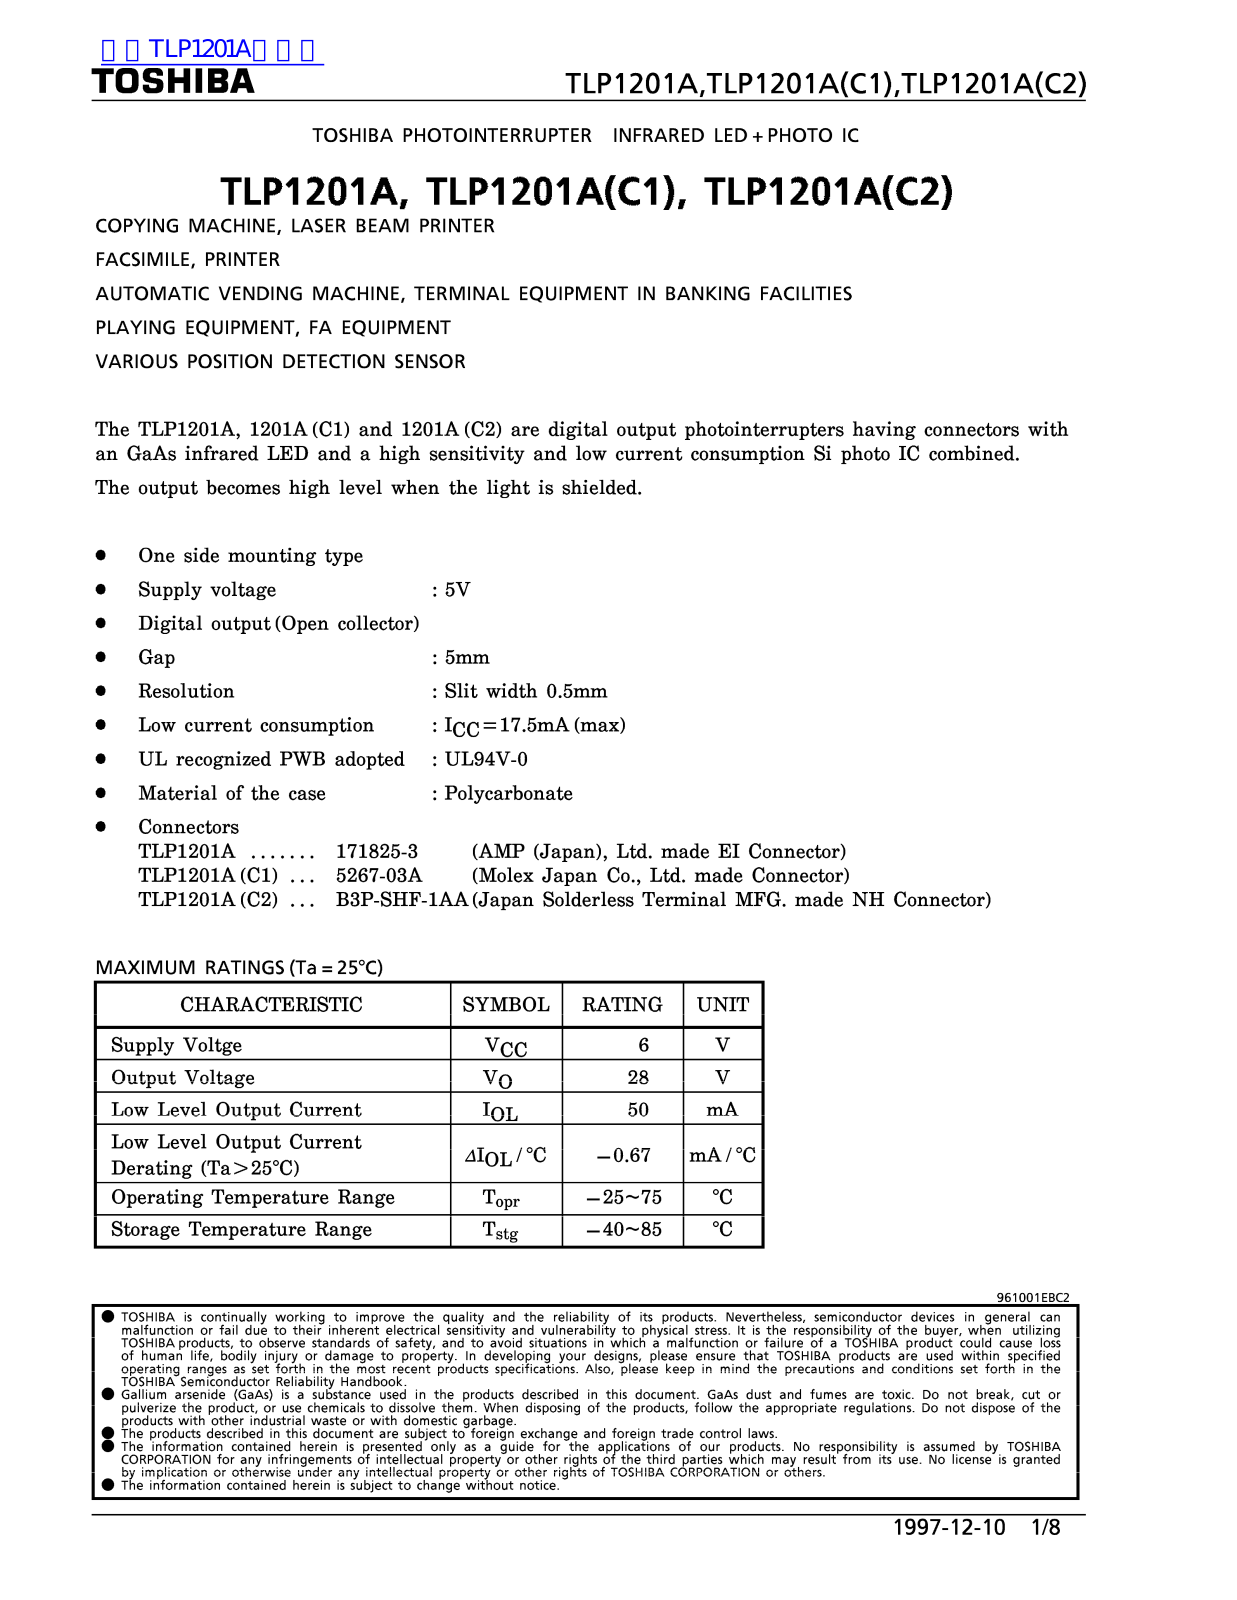 TOSHIBA TLP1201A, TLP1201A-C1, TLP1201A-C2 Technical data